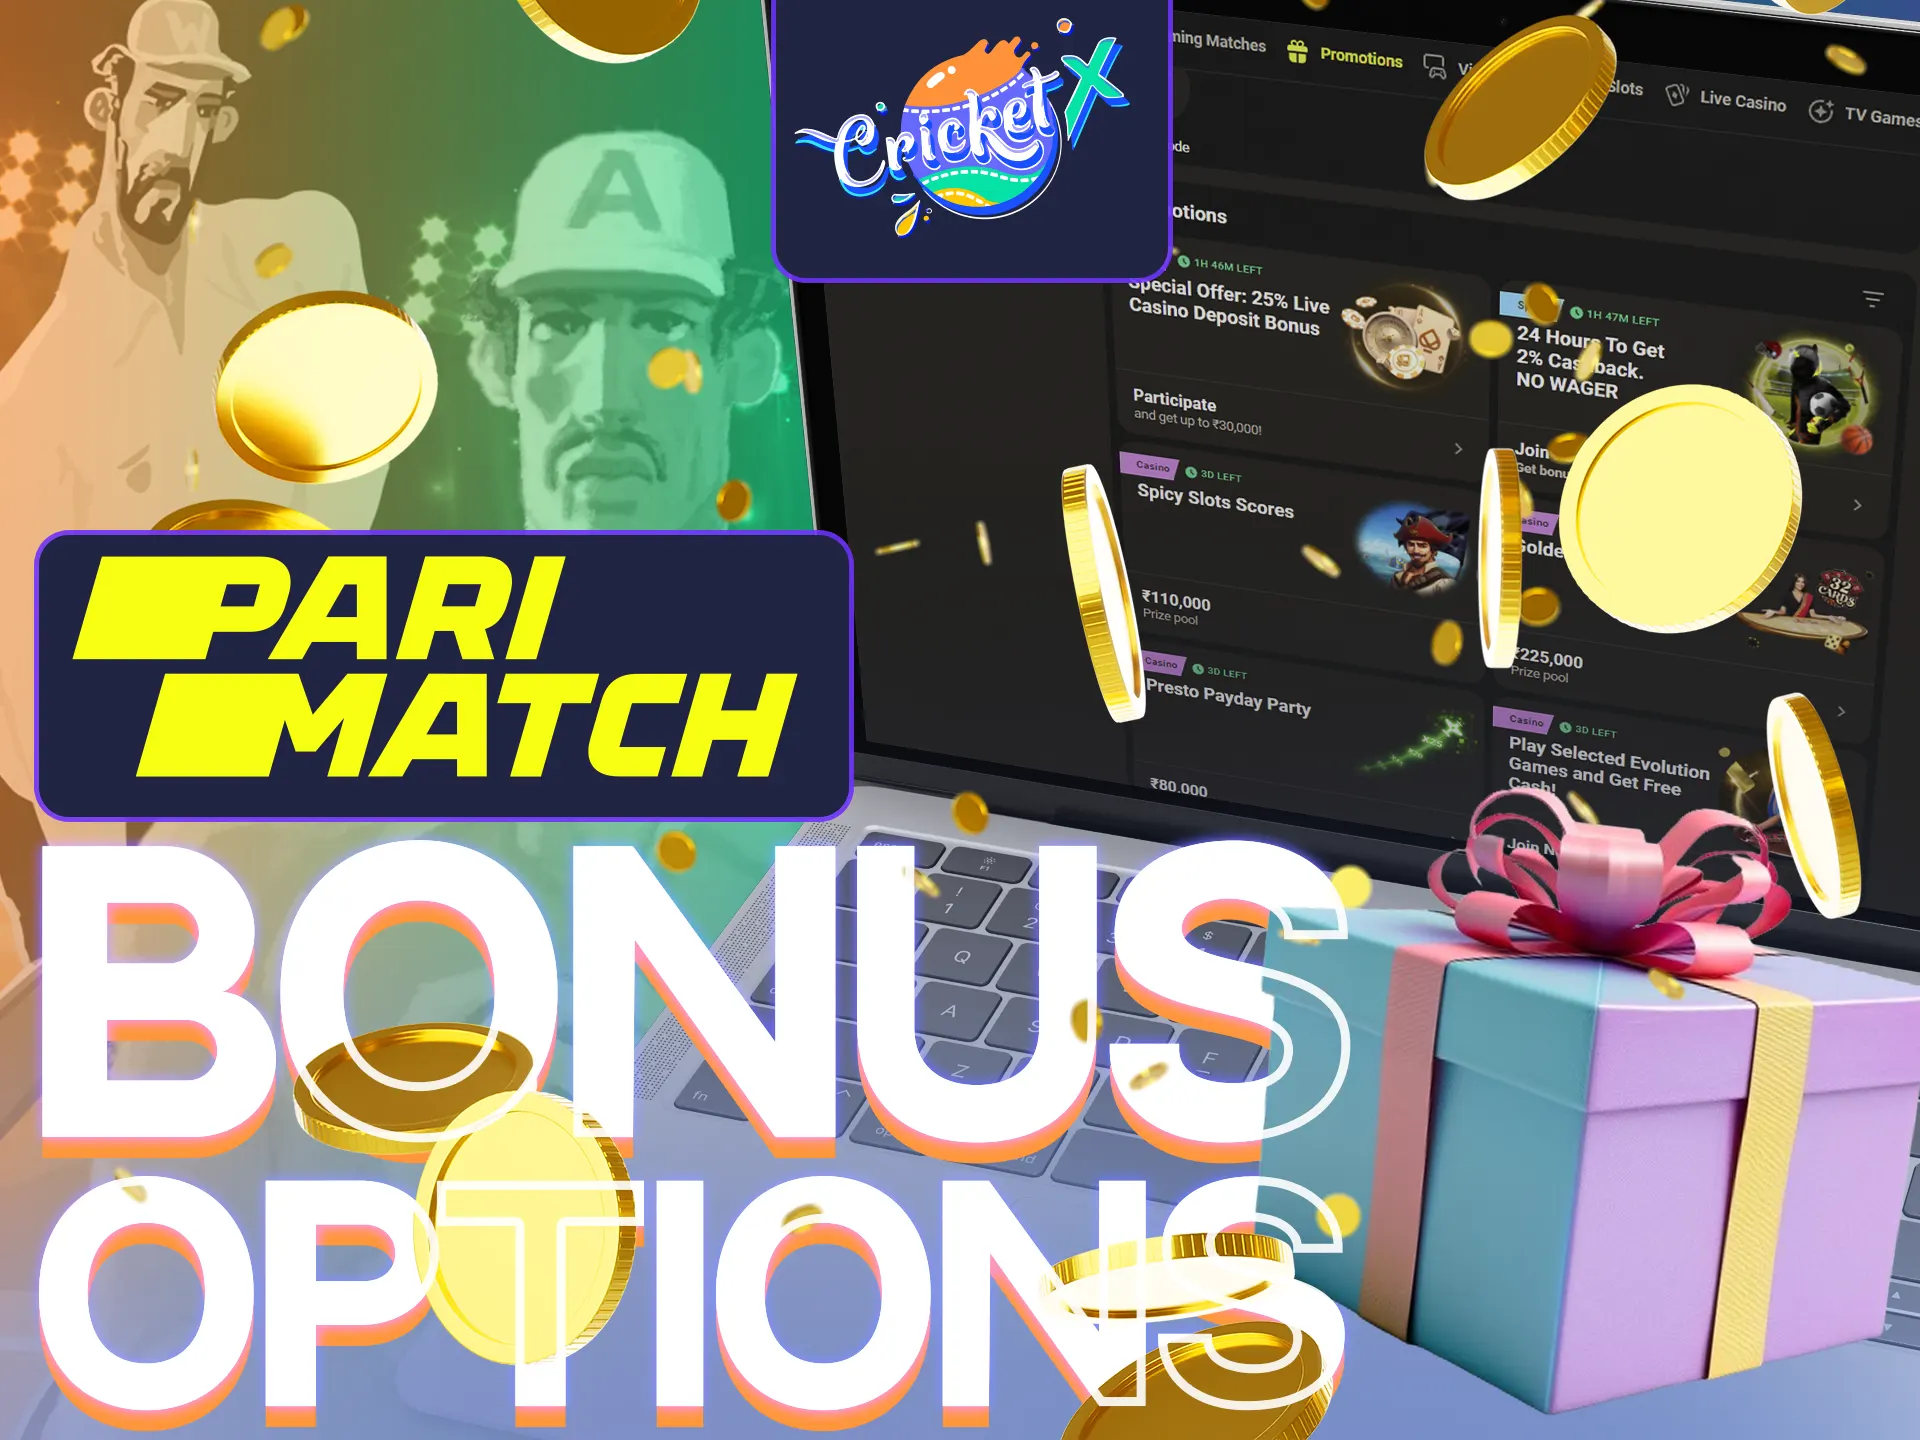 Get exclusive Cricket X bonuses at Parimatch.